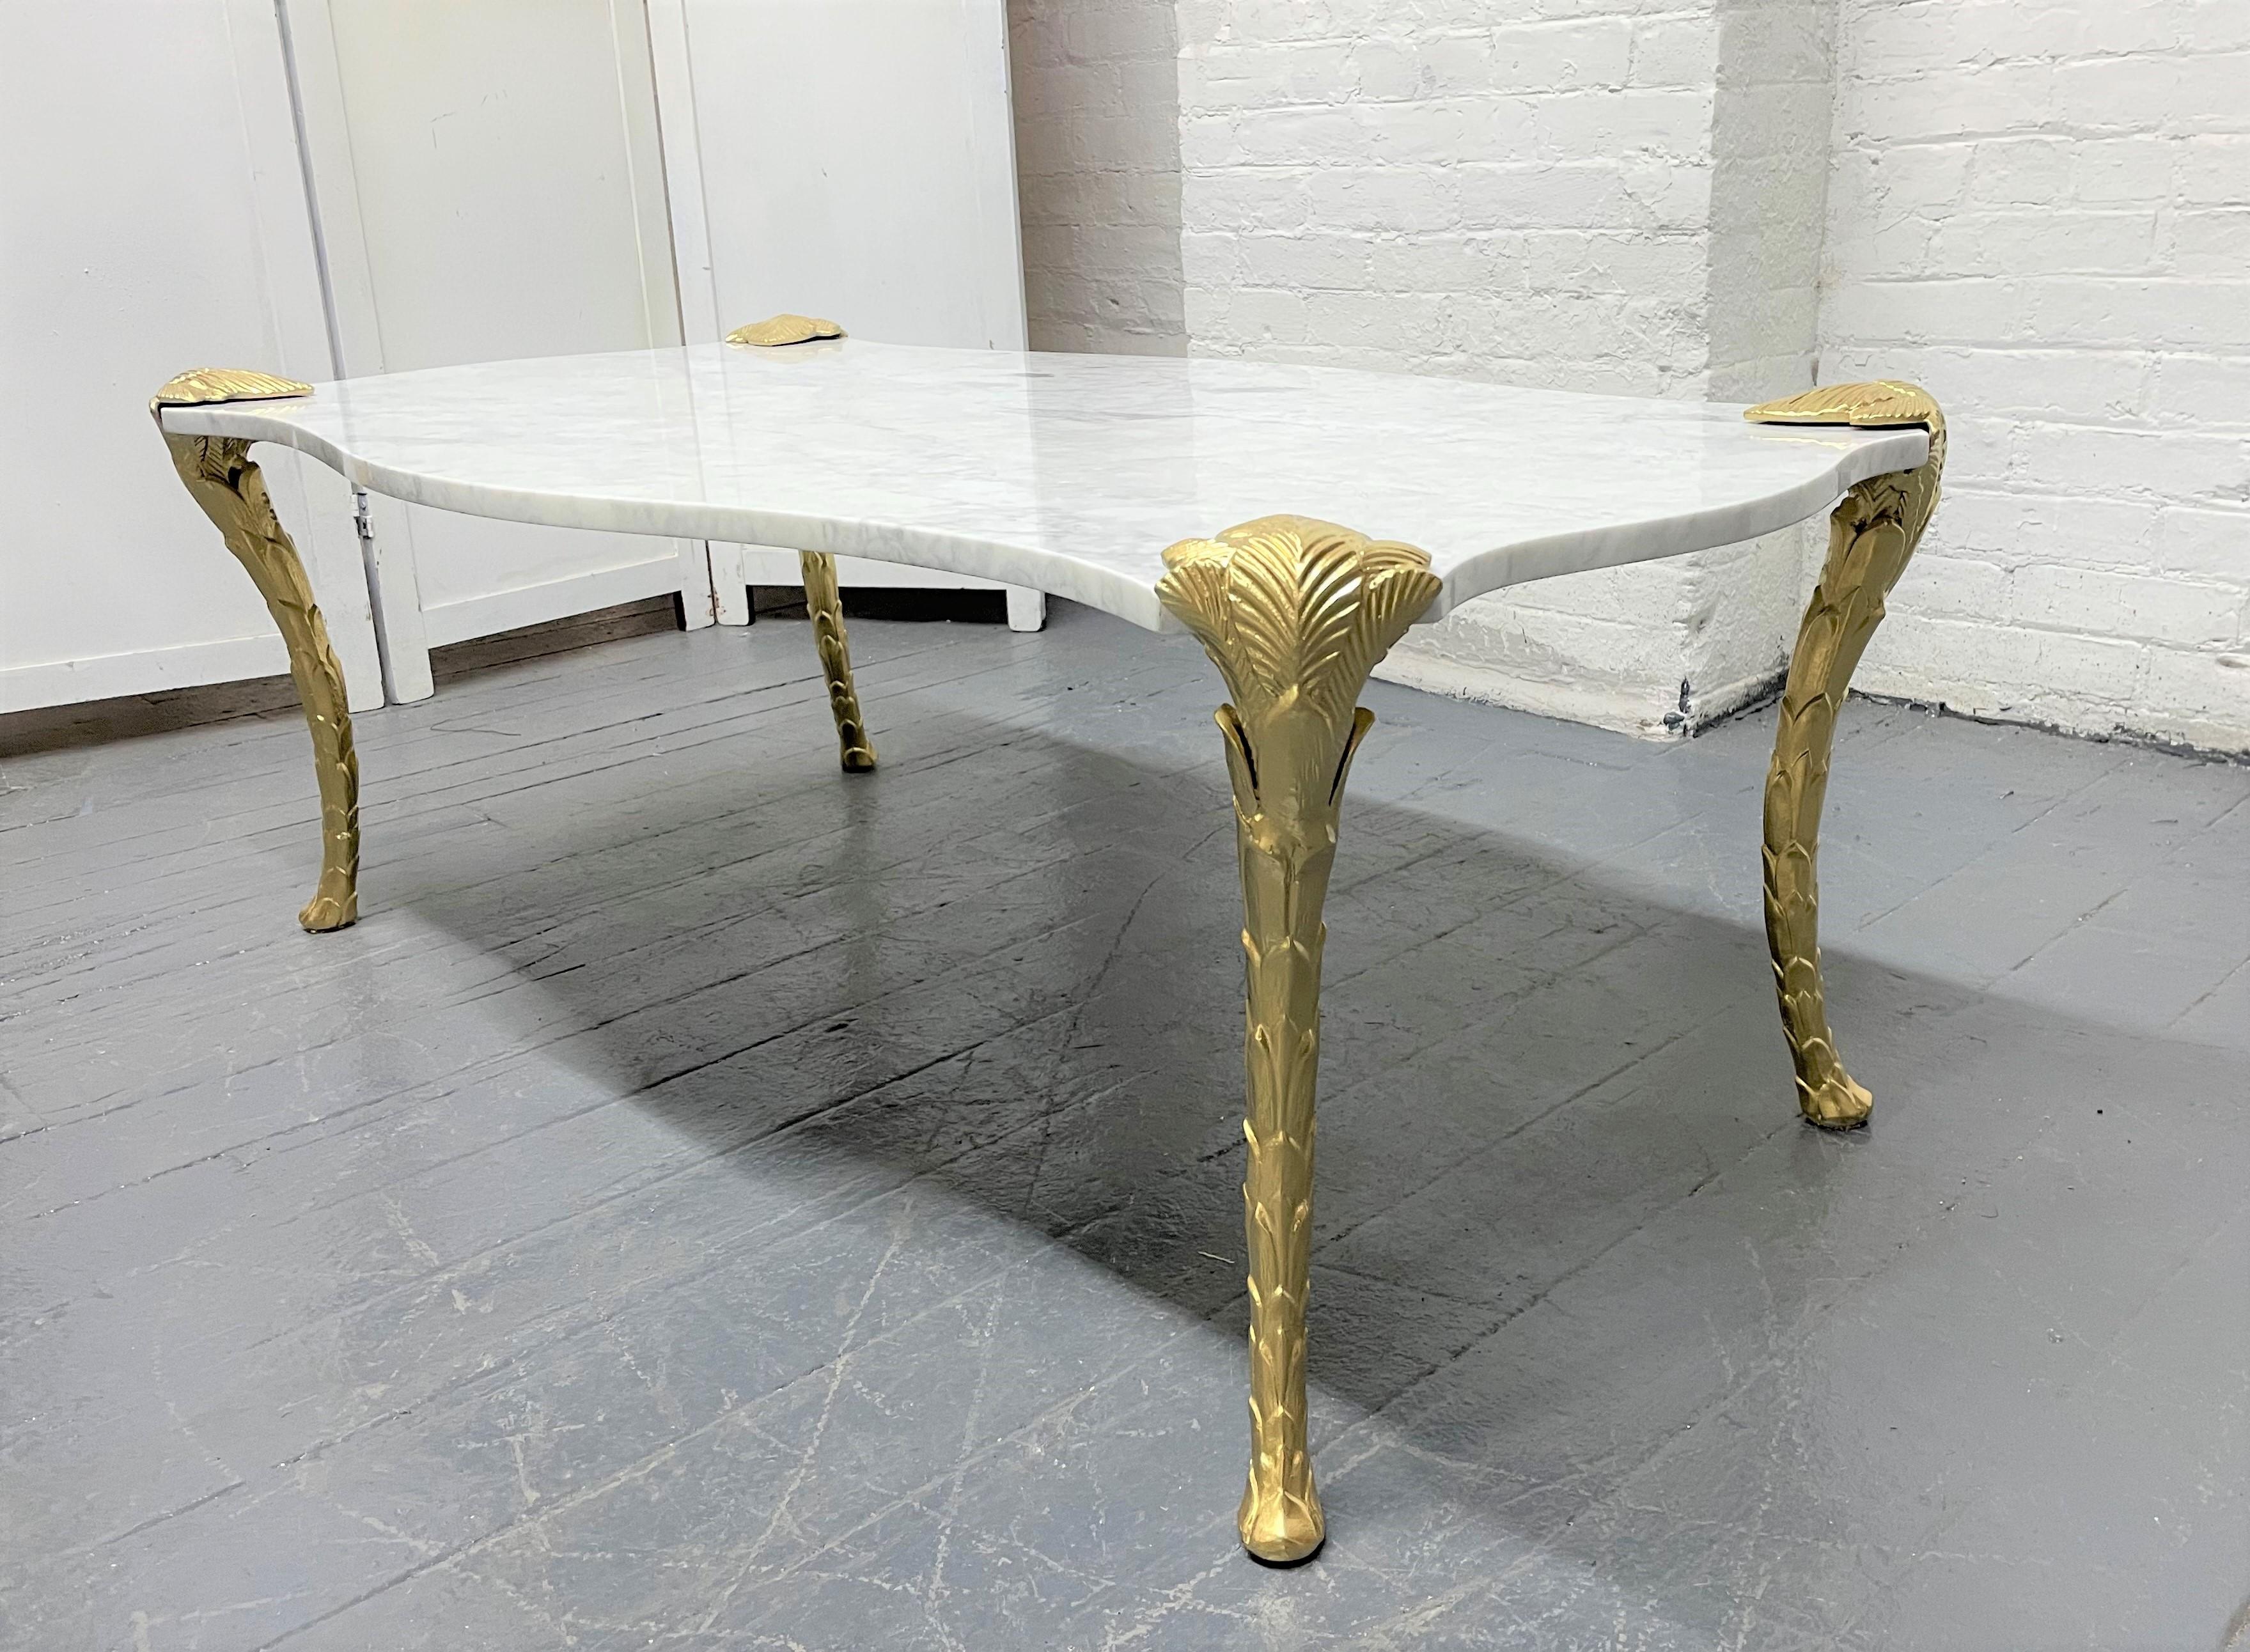 Dekorativer Couchtisch mit Carrara-Marmorplatte und floralen Beinen. Die Beine sind aus Metall mit einem goldfarbenen Blumenmuster. Stil von Maison Charles.